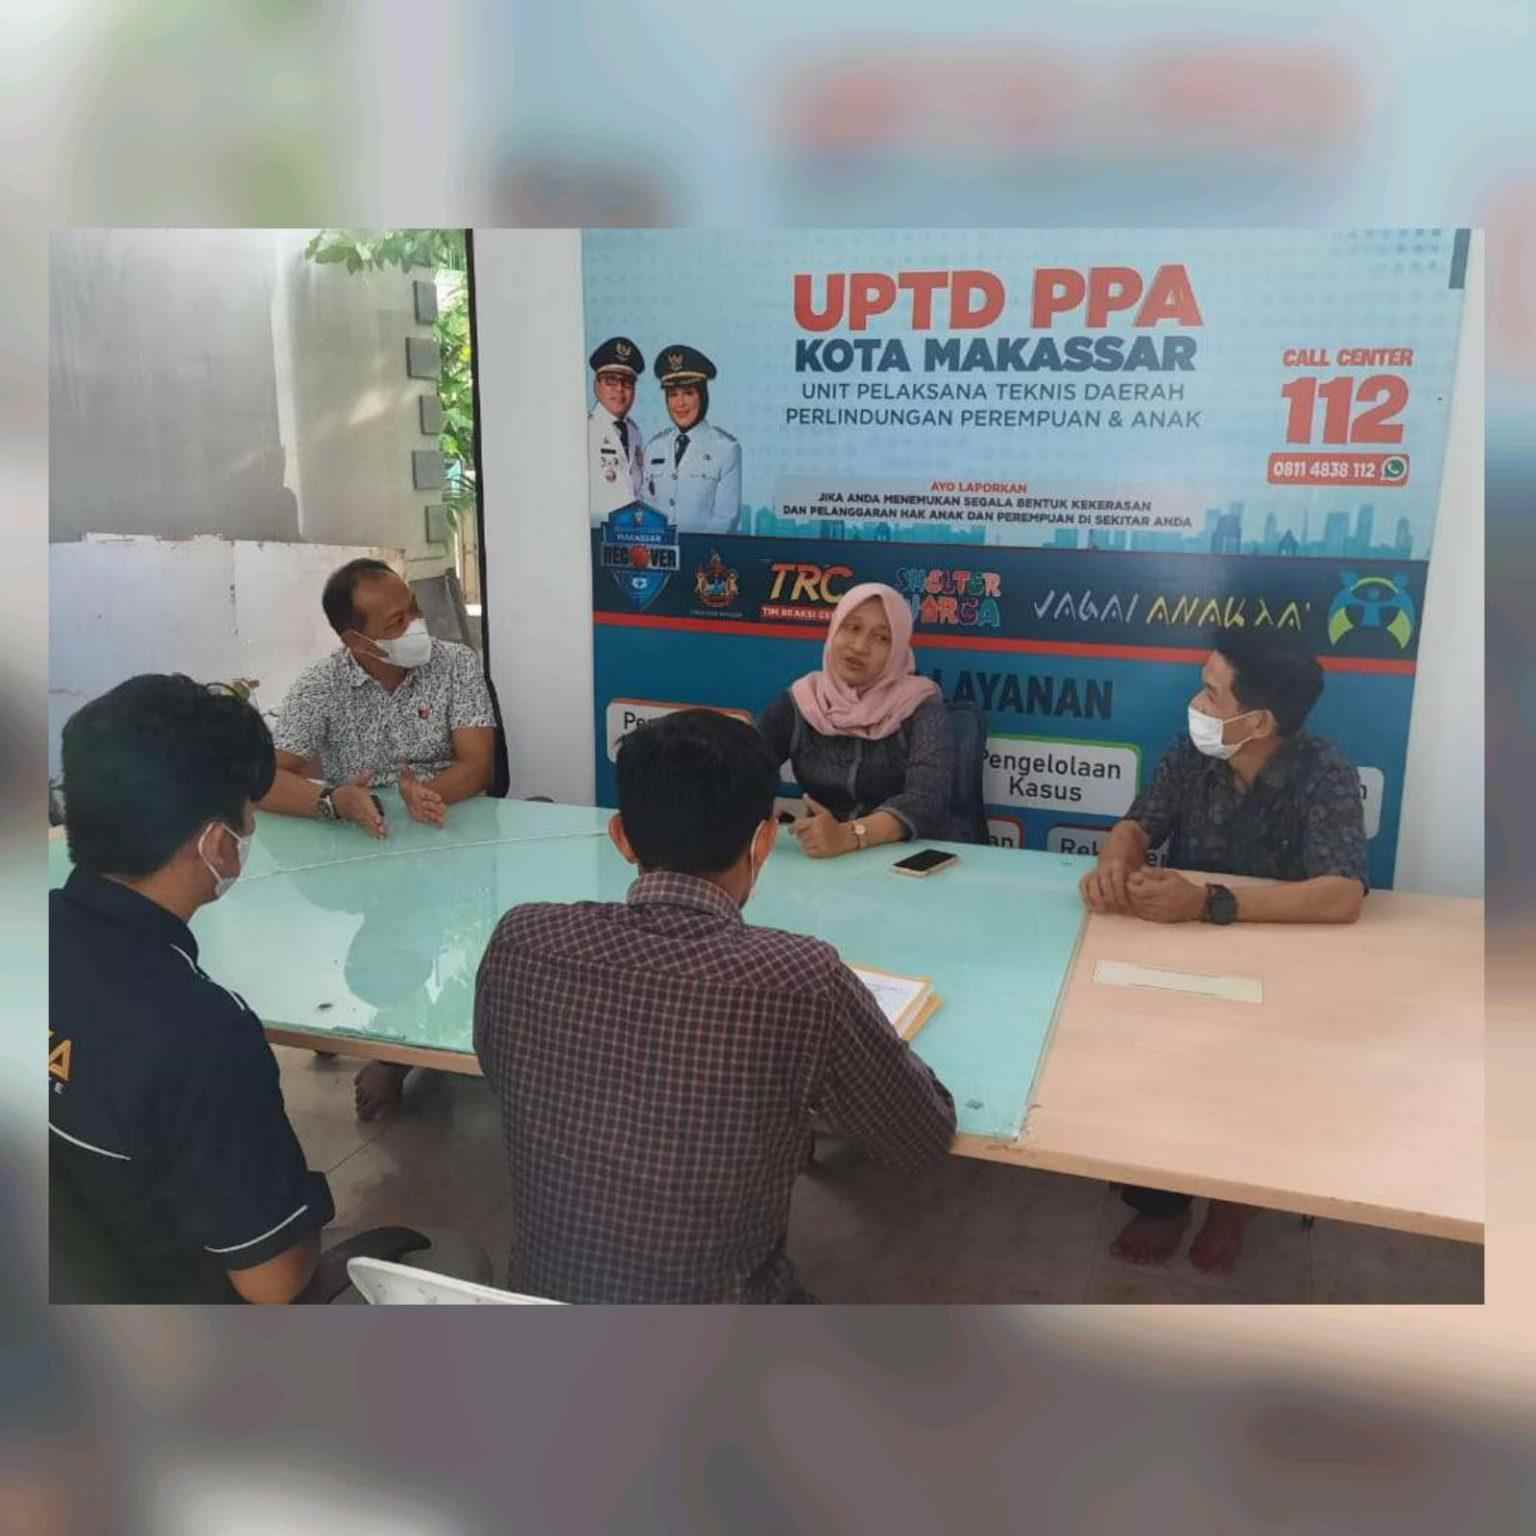 Optimalkan Penanganan Anak Yang Berhadapan Hukum Kanit PPA Polrestabes Makassar Kunjungi UPTD PPA Makassar